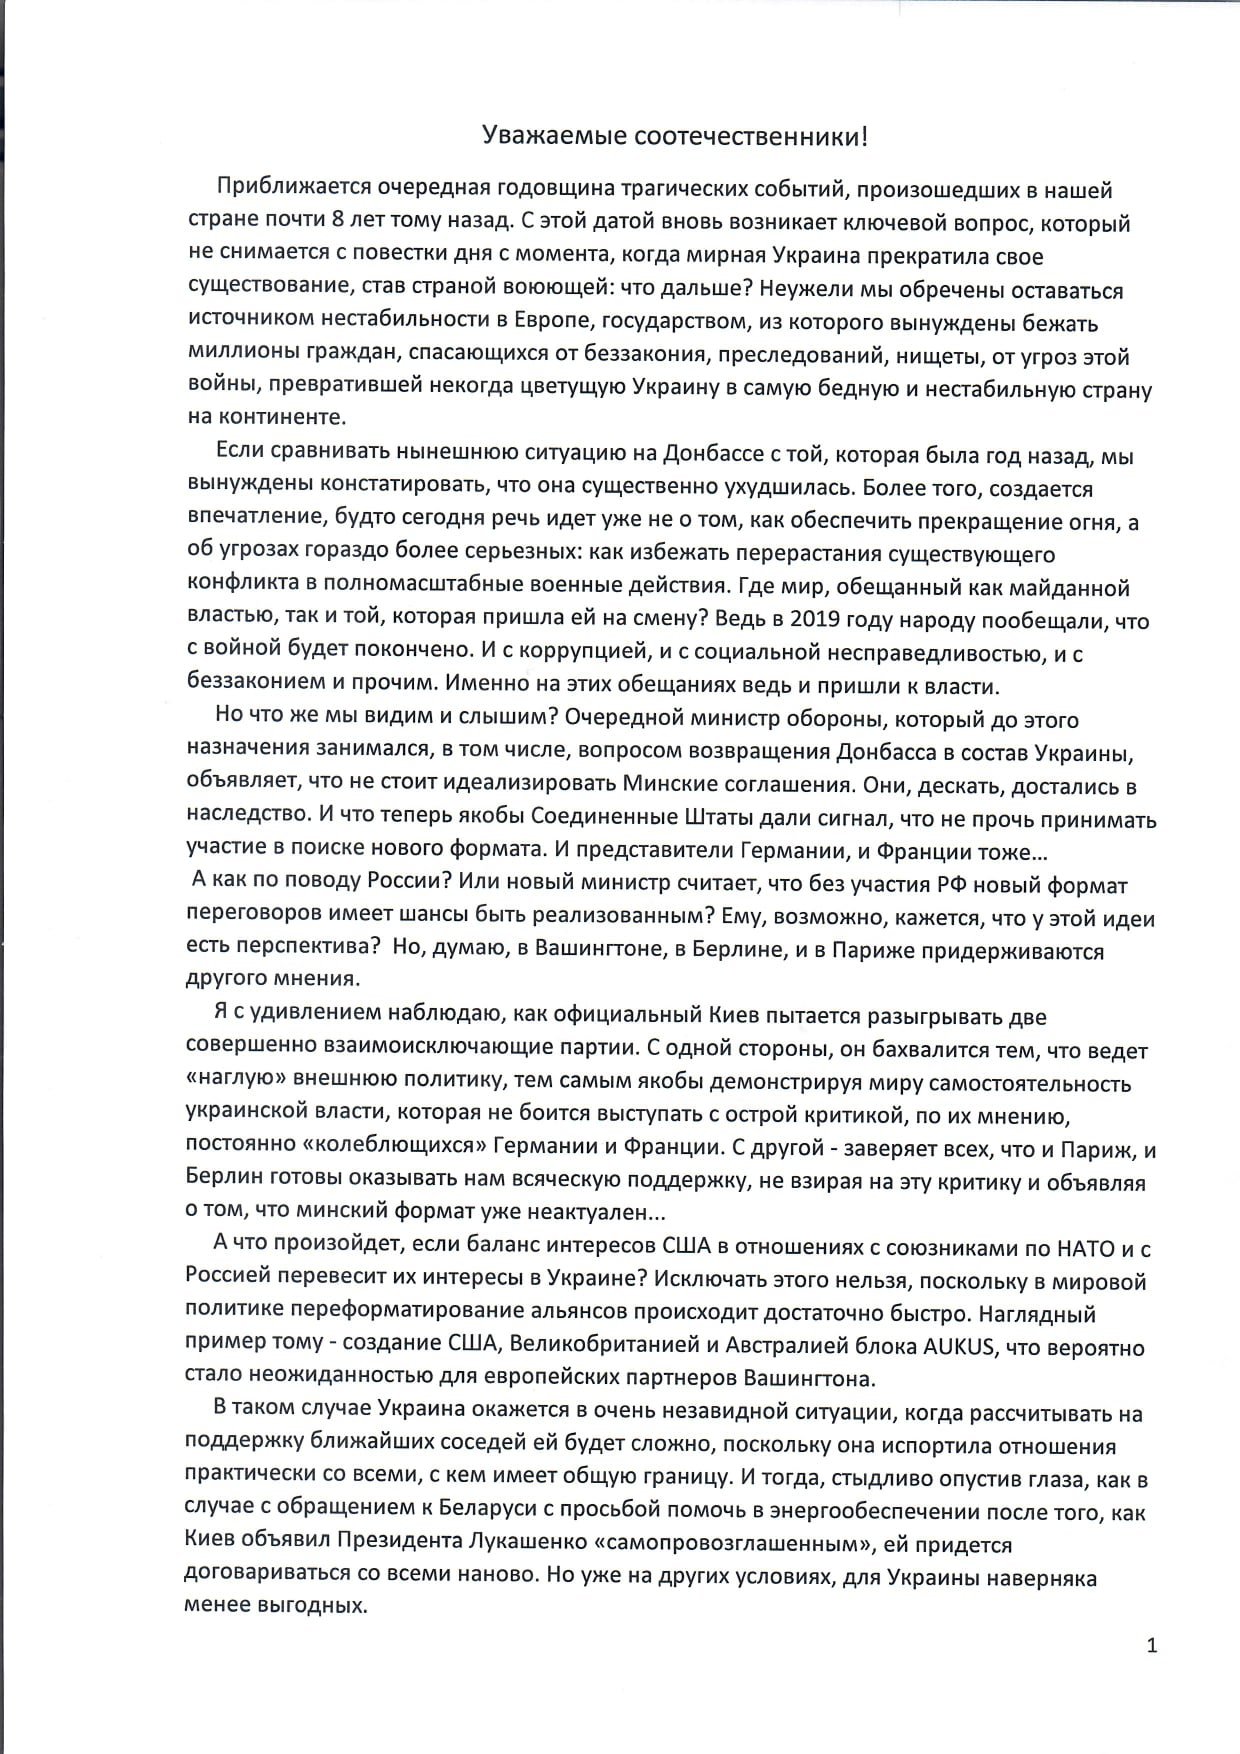 ​Янукович вспомнил о 2014 годе, Донбассе и "посоветовал" Украине новую стратегию развития